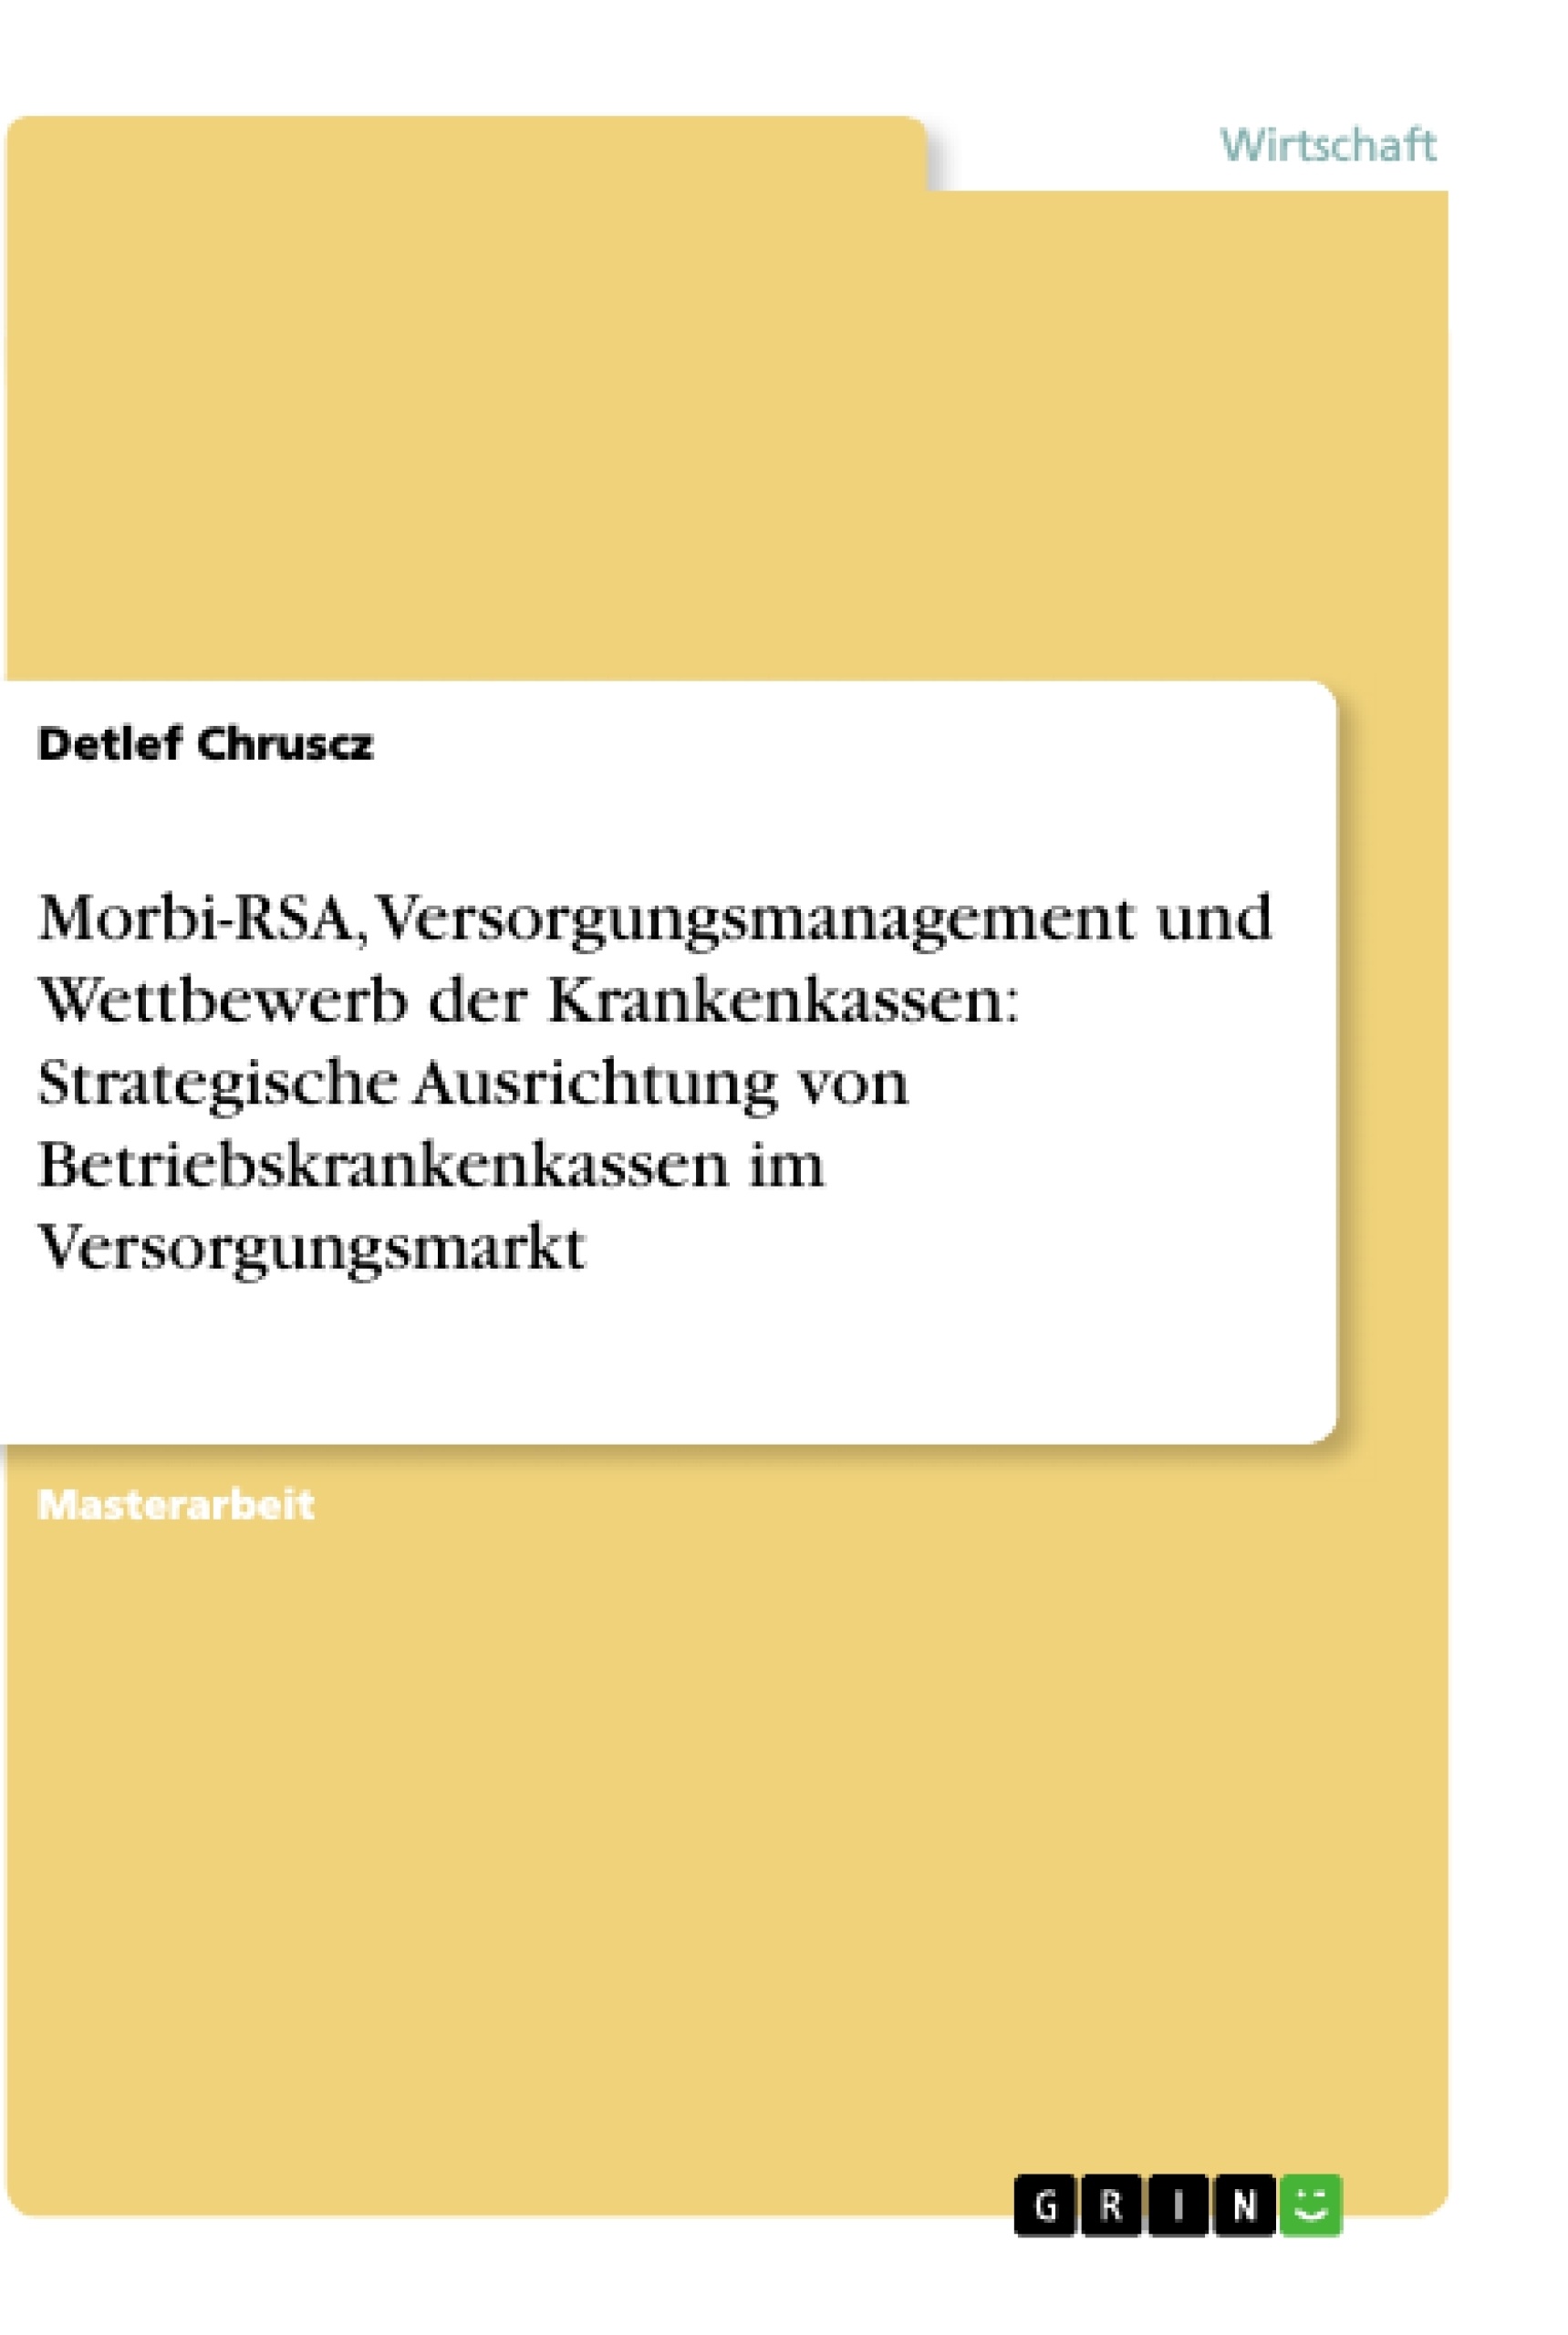 Título: Morbi-RSA, Versorgungsmanagement und Wettbewerb der Krankenkassen: Strategische Ausrichtung von Betriebskrankenkassen im Versorgungsmarkt